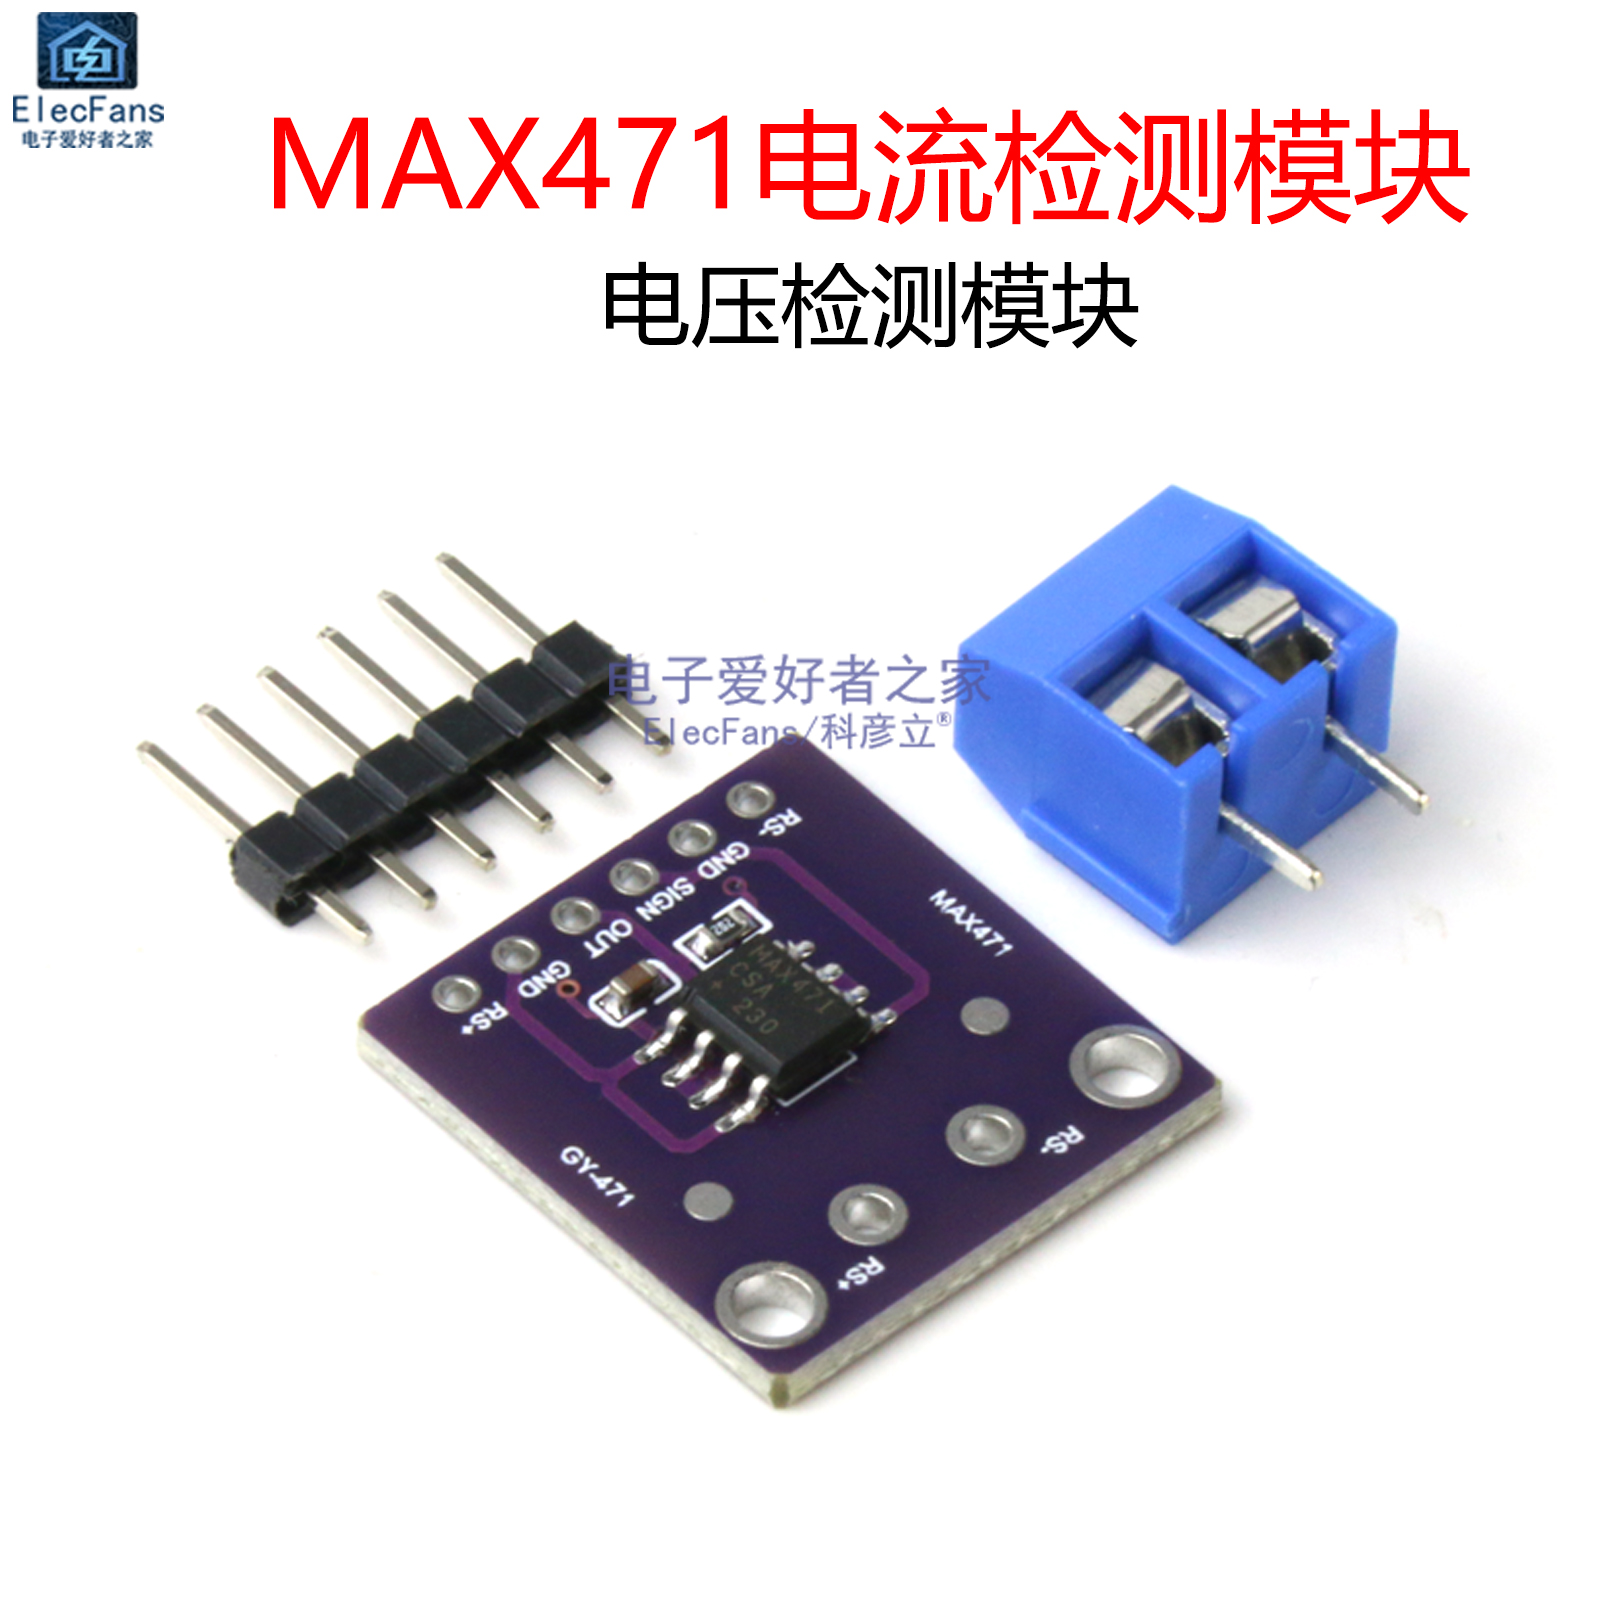 MAX471电流检测模块 电压检测模块 负载消耗电流电压传感器电路板